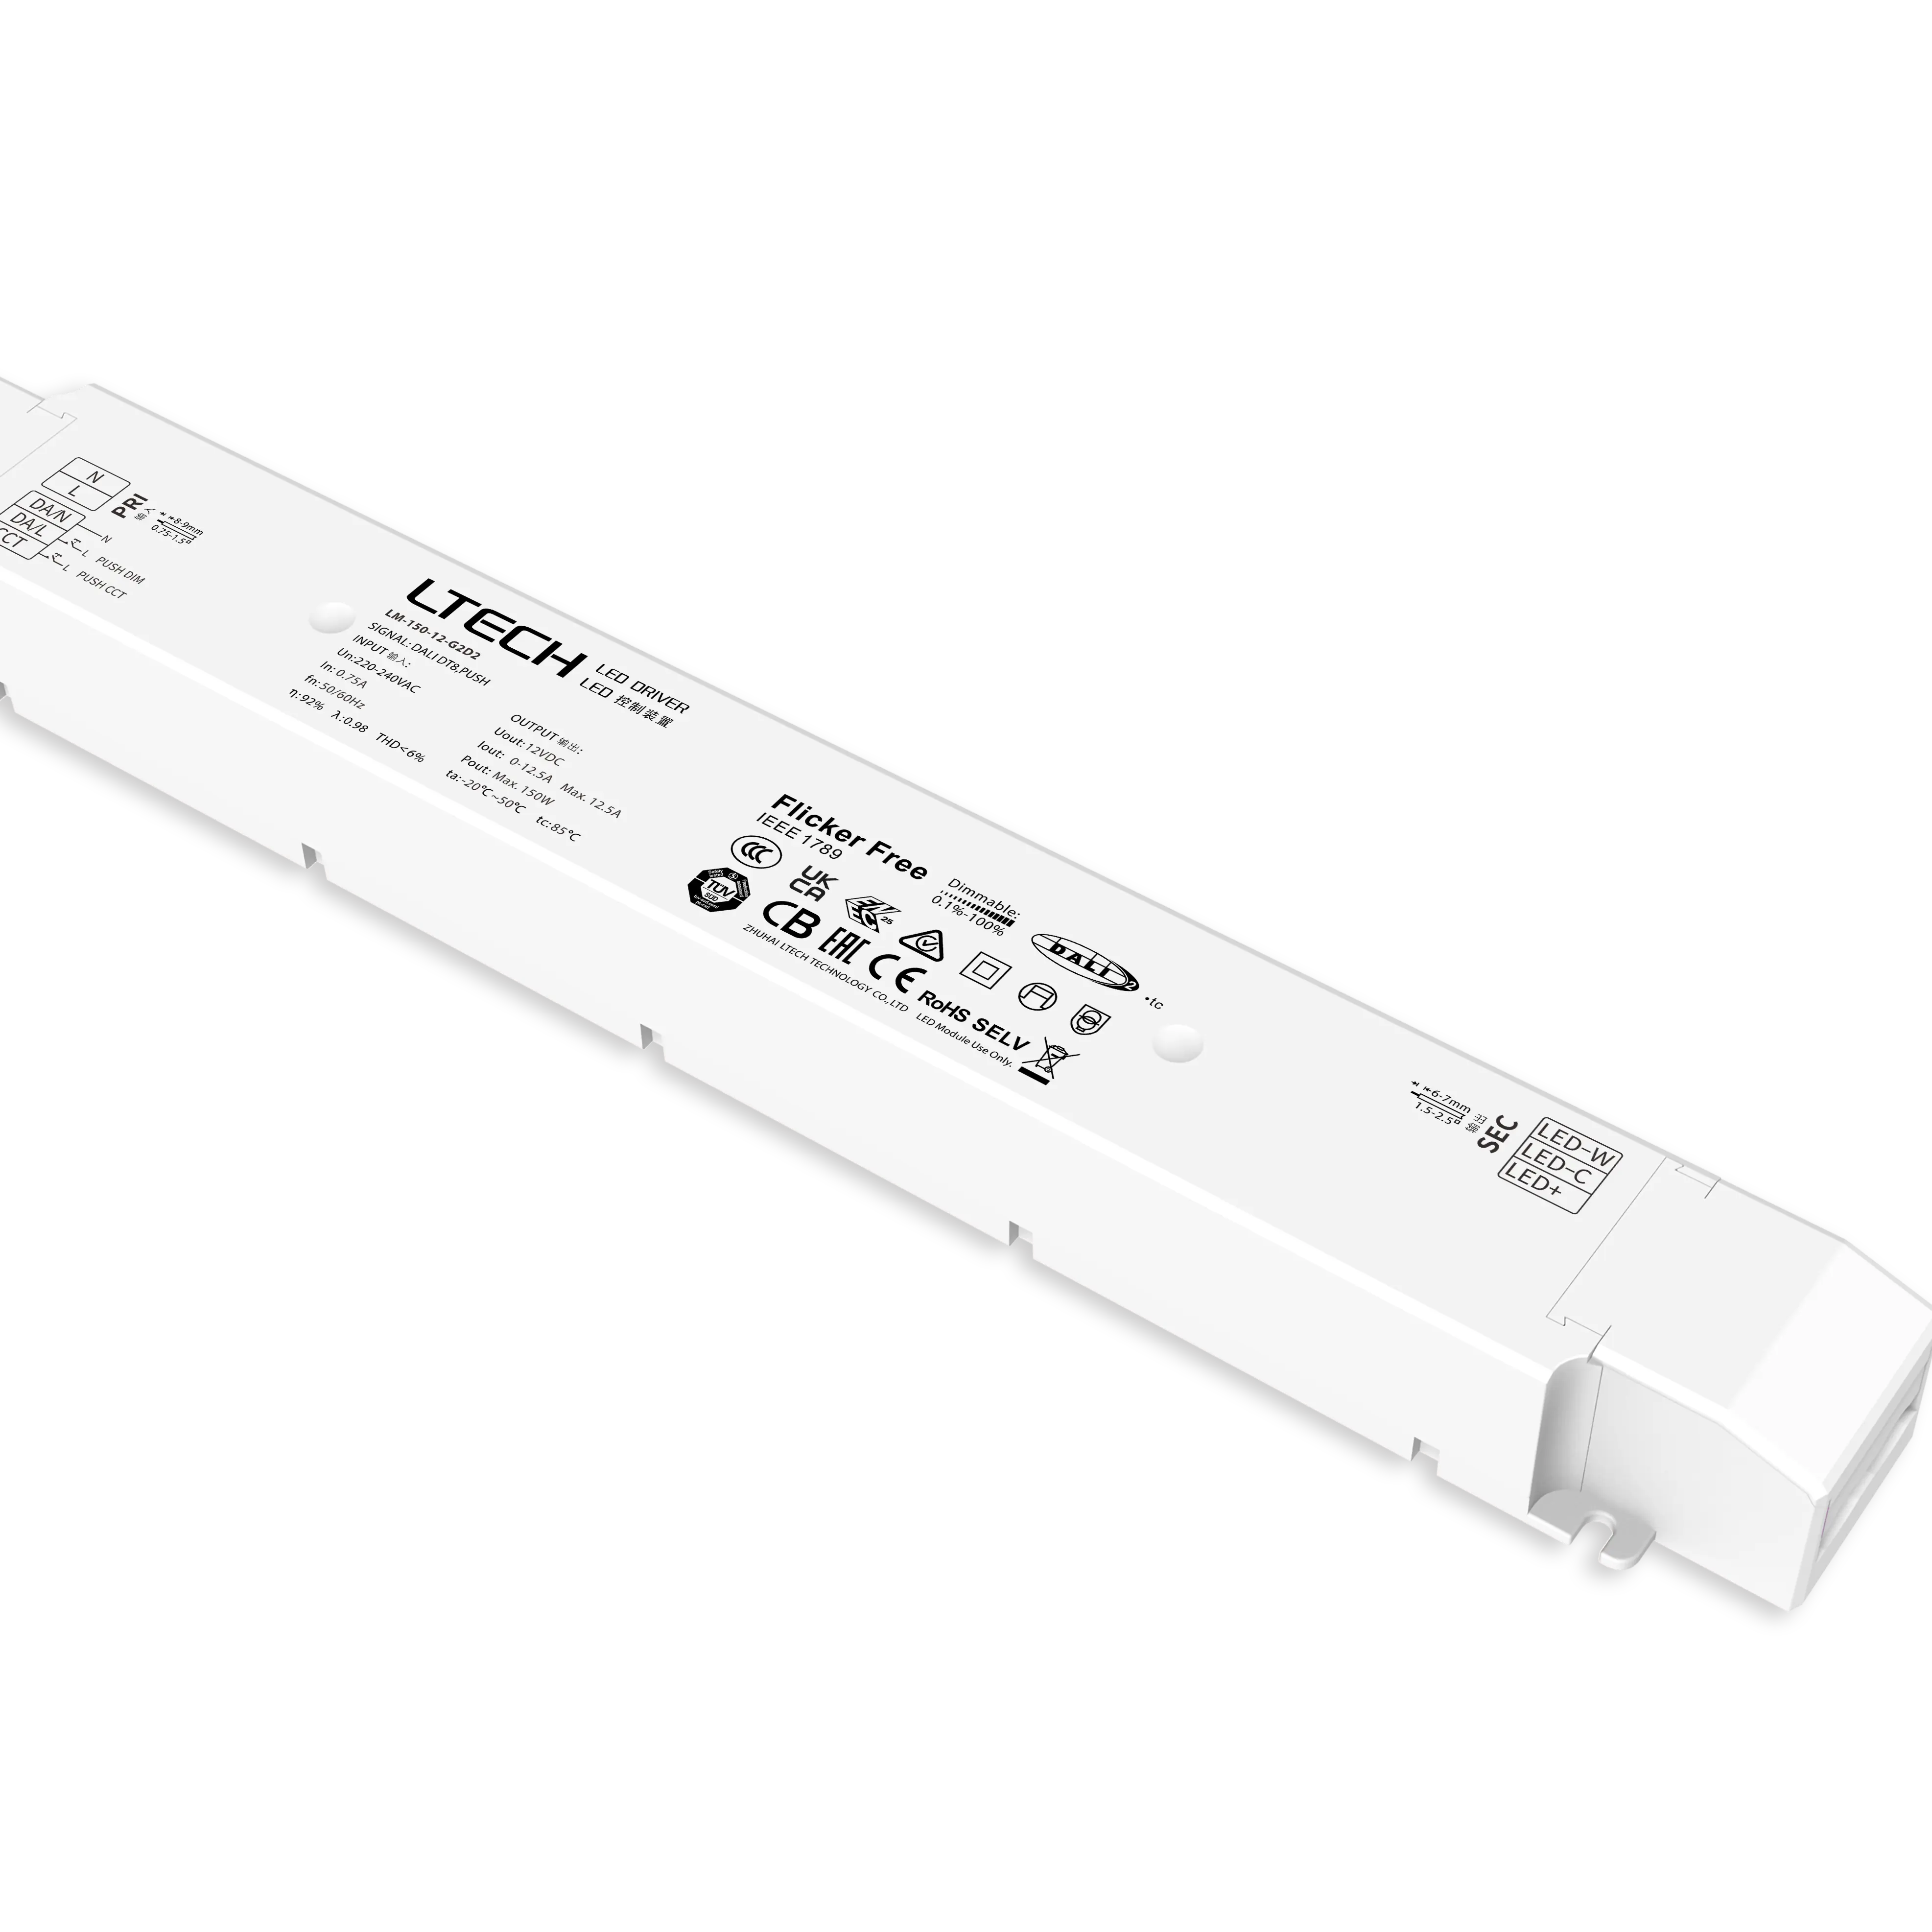 LTECH LED sürücü DALI DT8 150W LM-150-24-G2D2 Flick ücretsiz kısılabilir LED sürücüsü 24V 12V LED şerit işıklar için